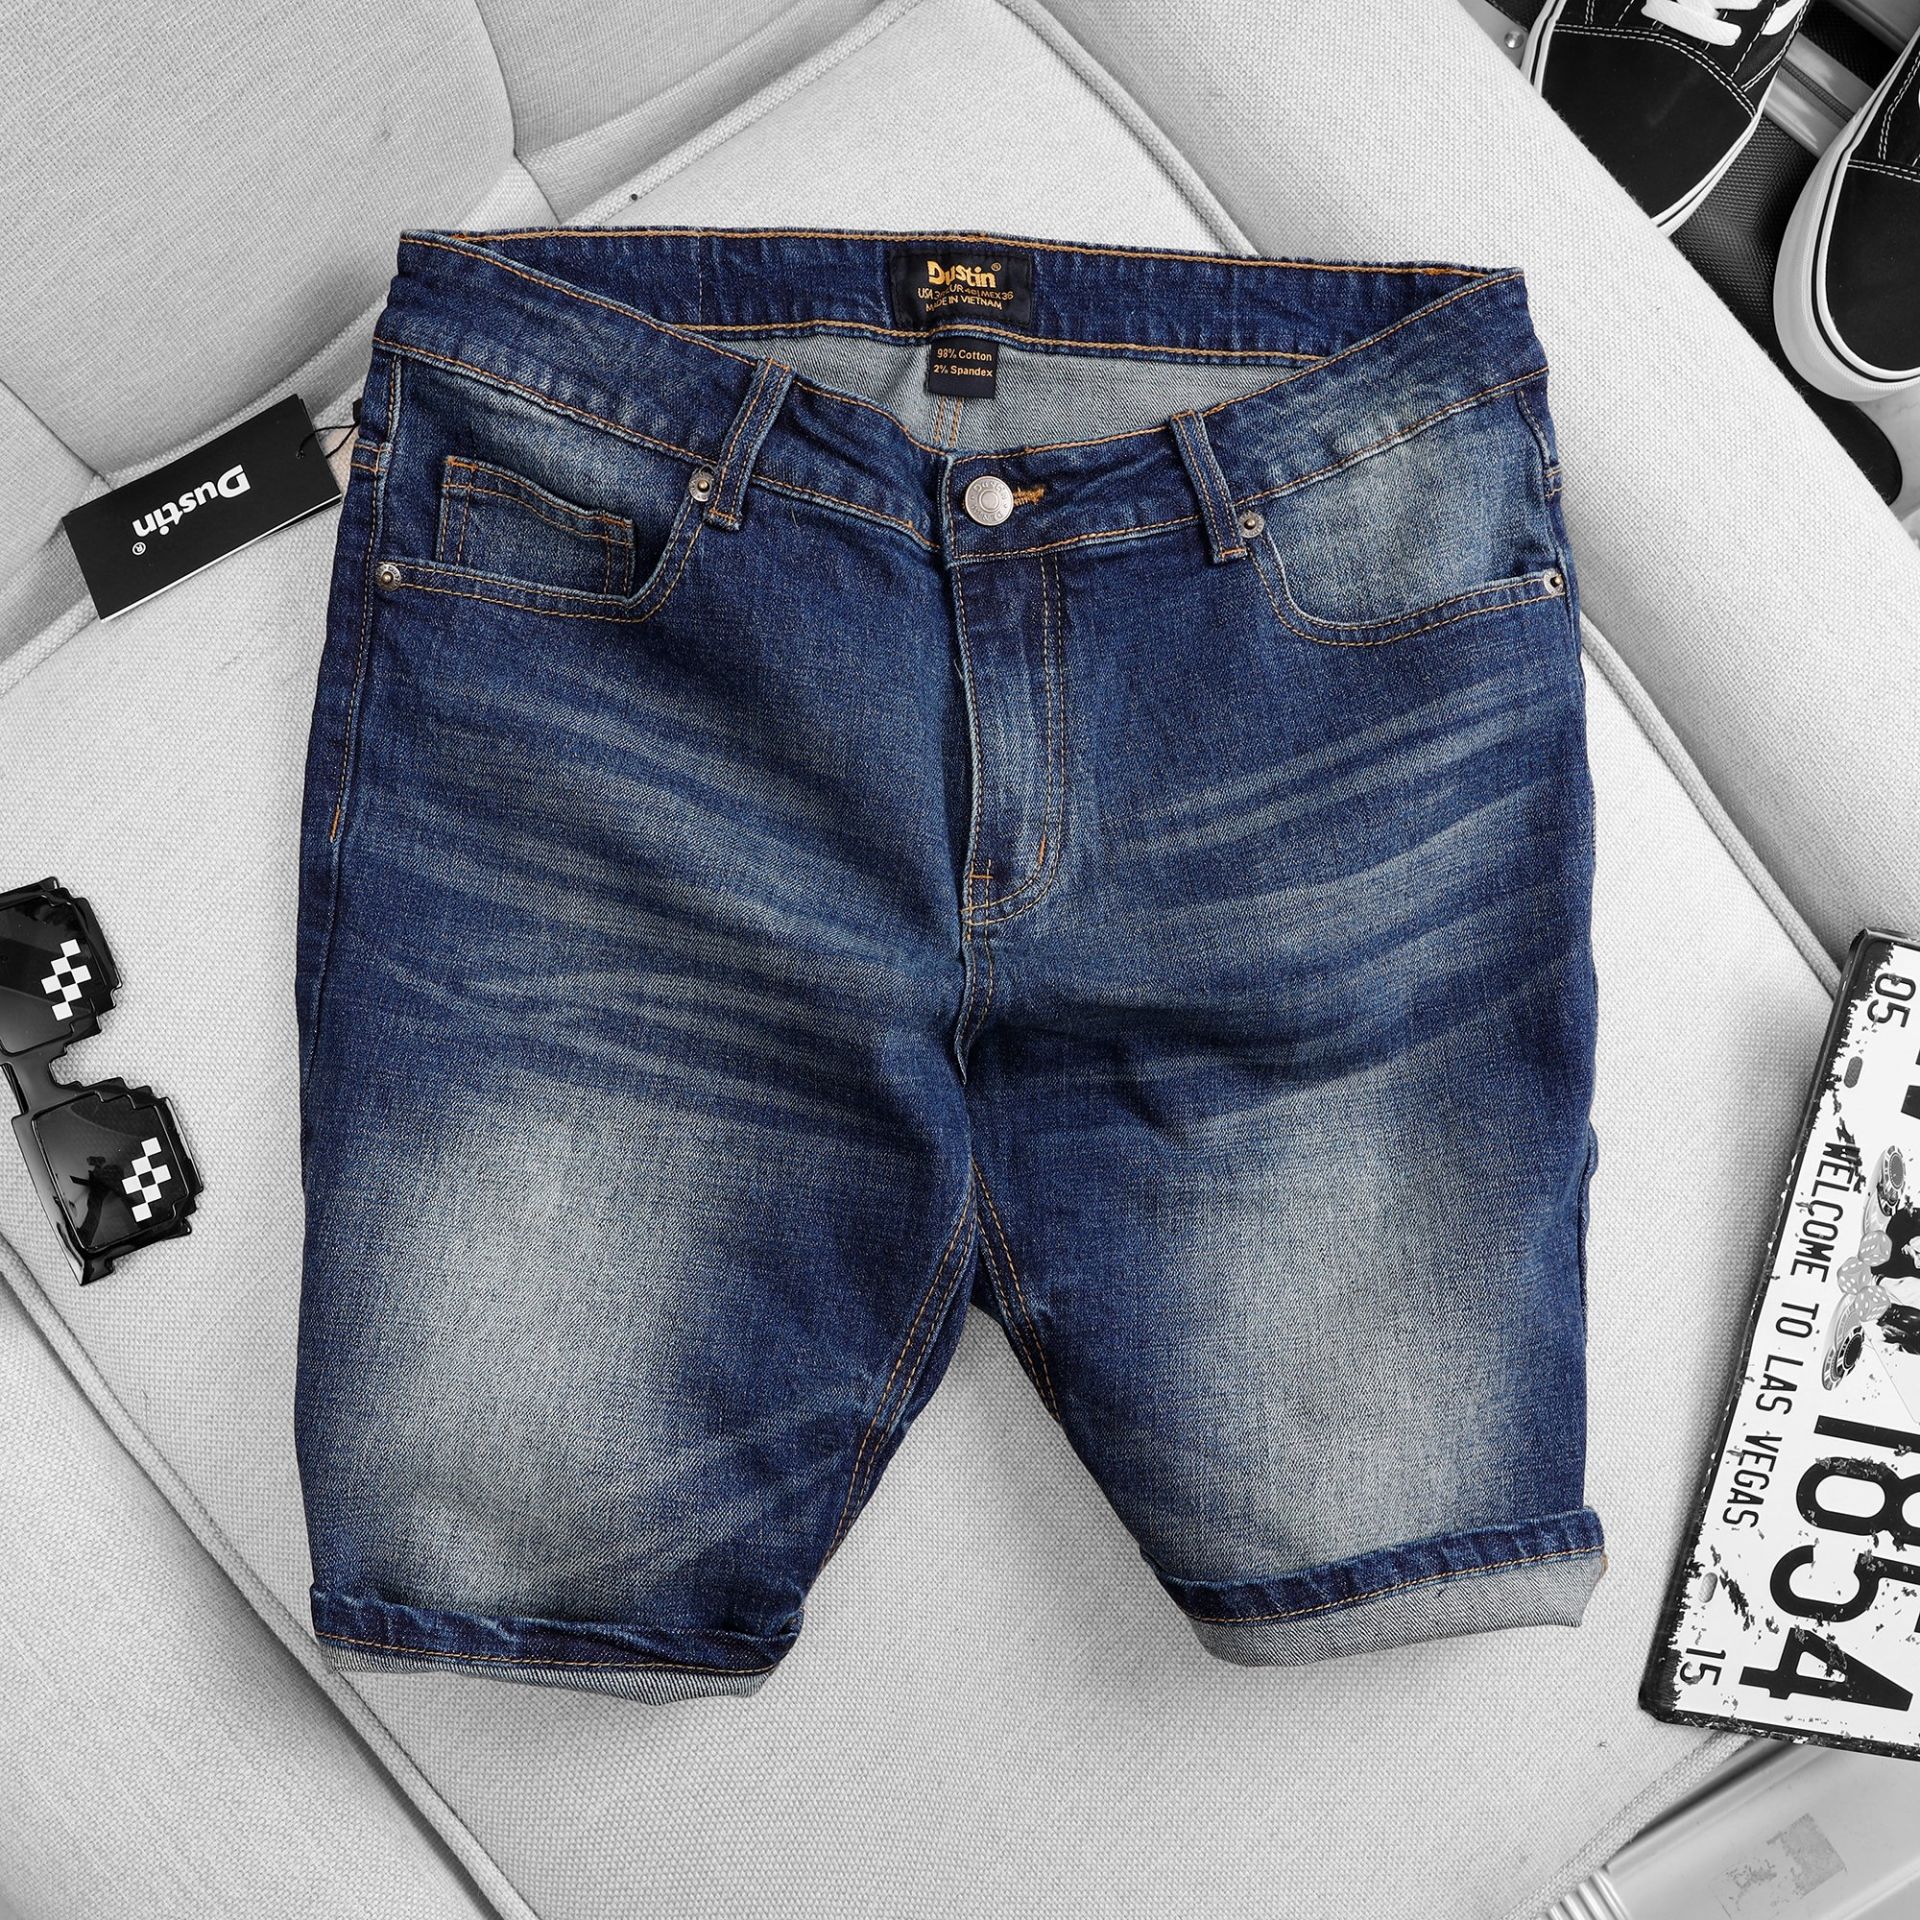 quần short jean nam big size dustin xanh 01 - bigg thời trang nam có bigsize đến 145kg 1